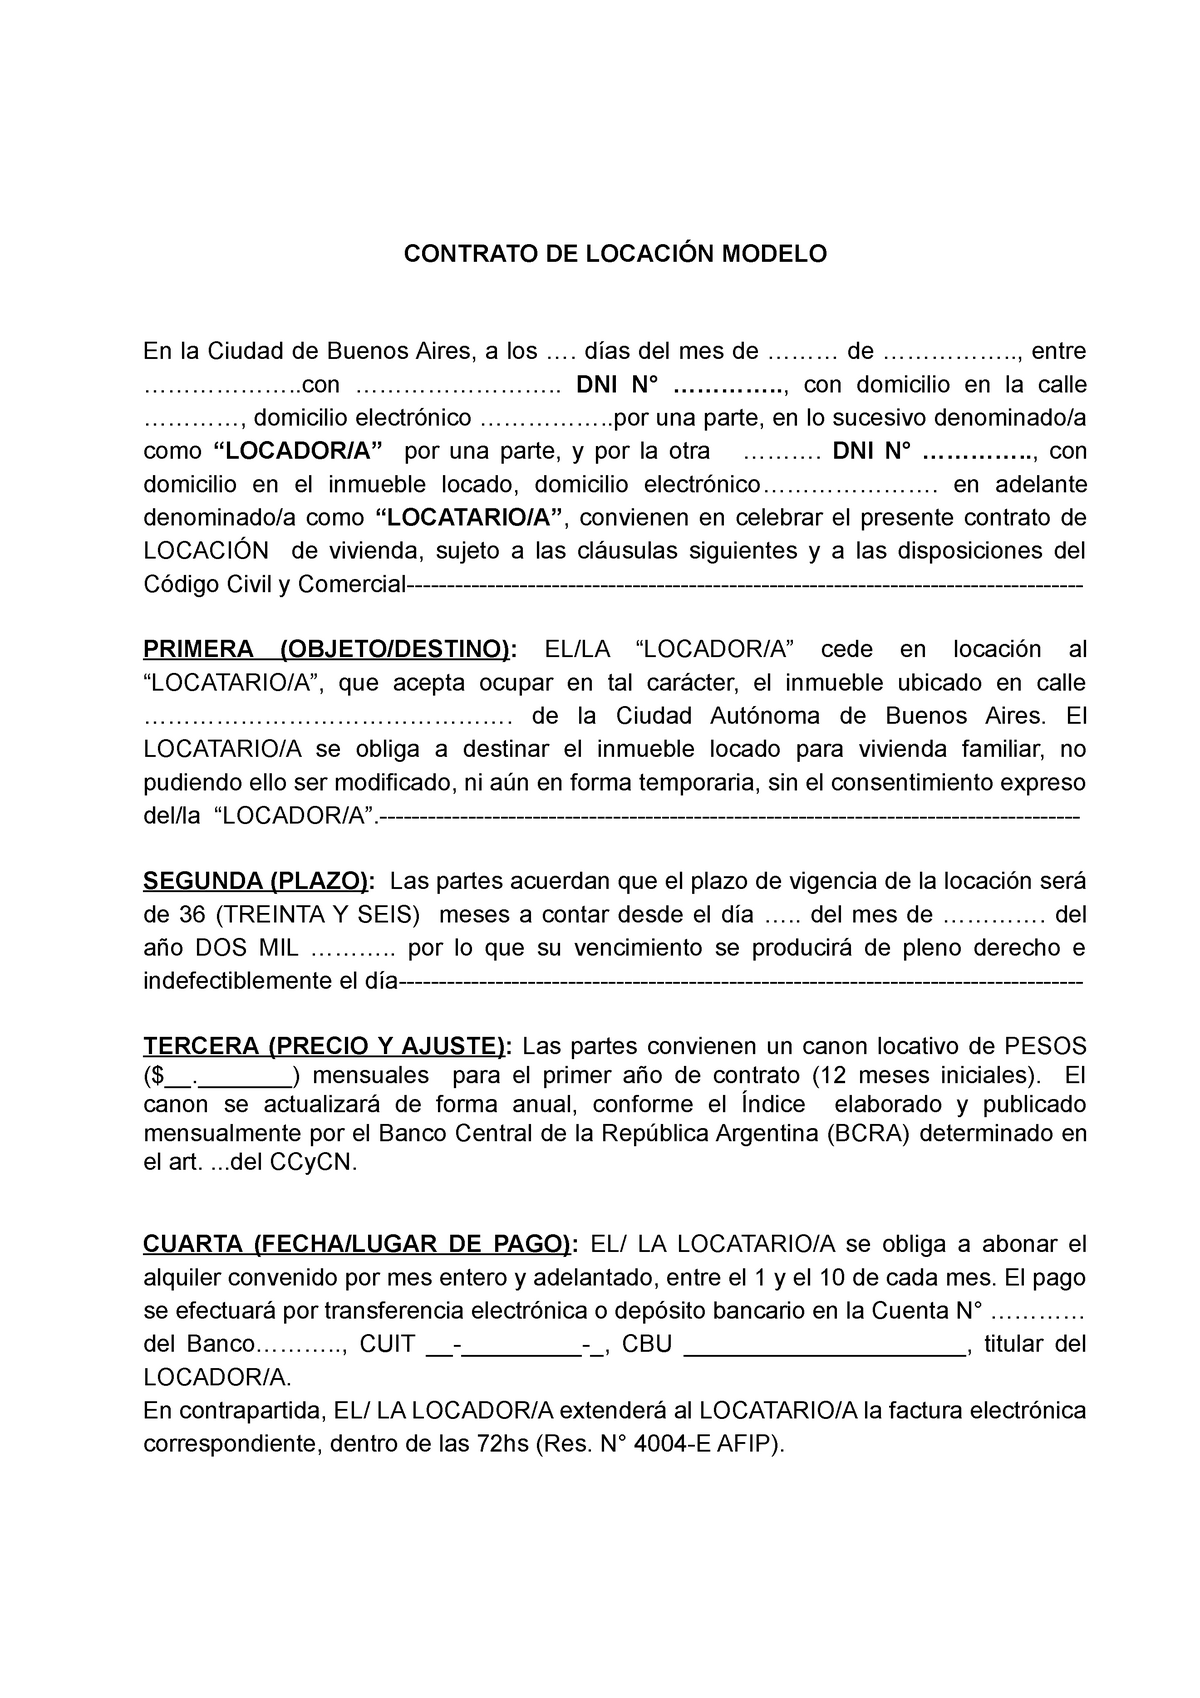 Documento Contrato Modelo 2 Contrato De LocaciÓn Modelo En La Ciudad